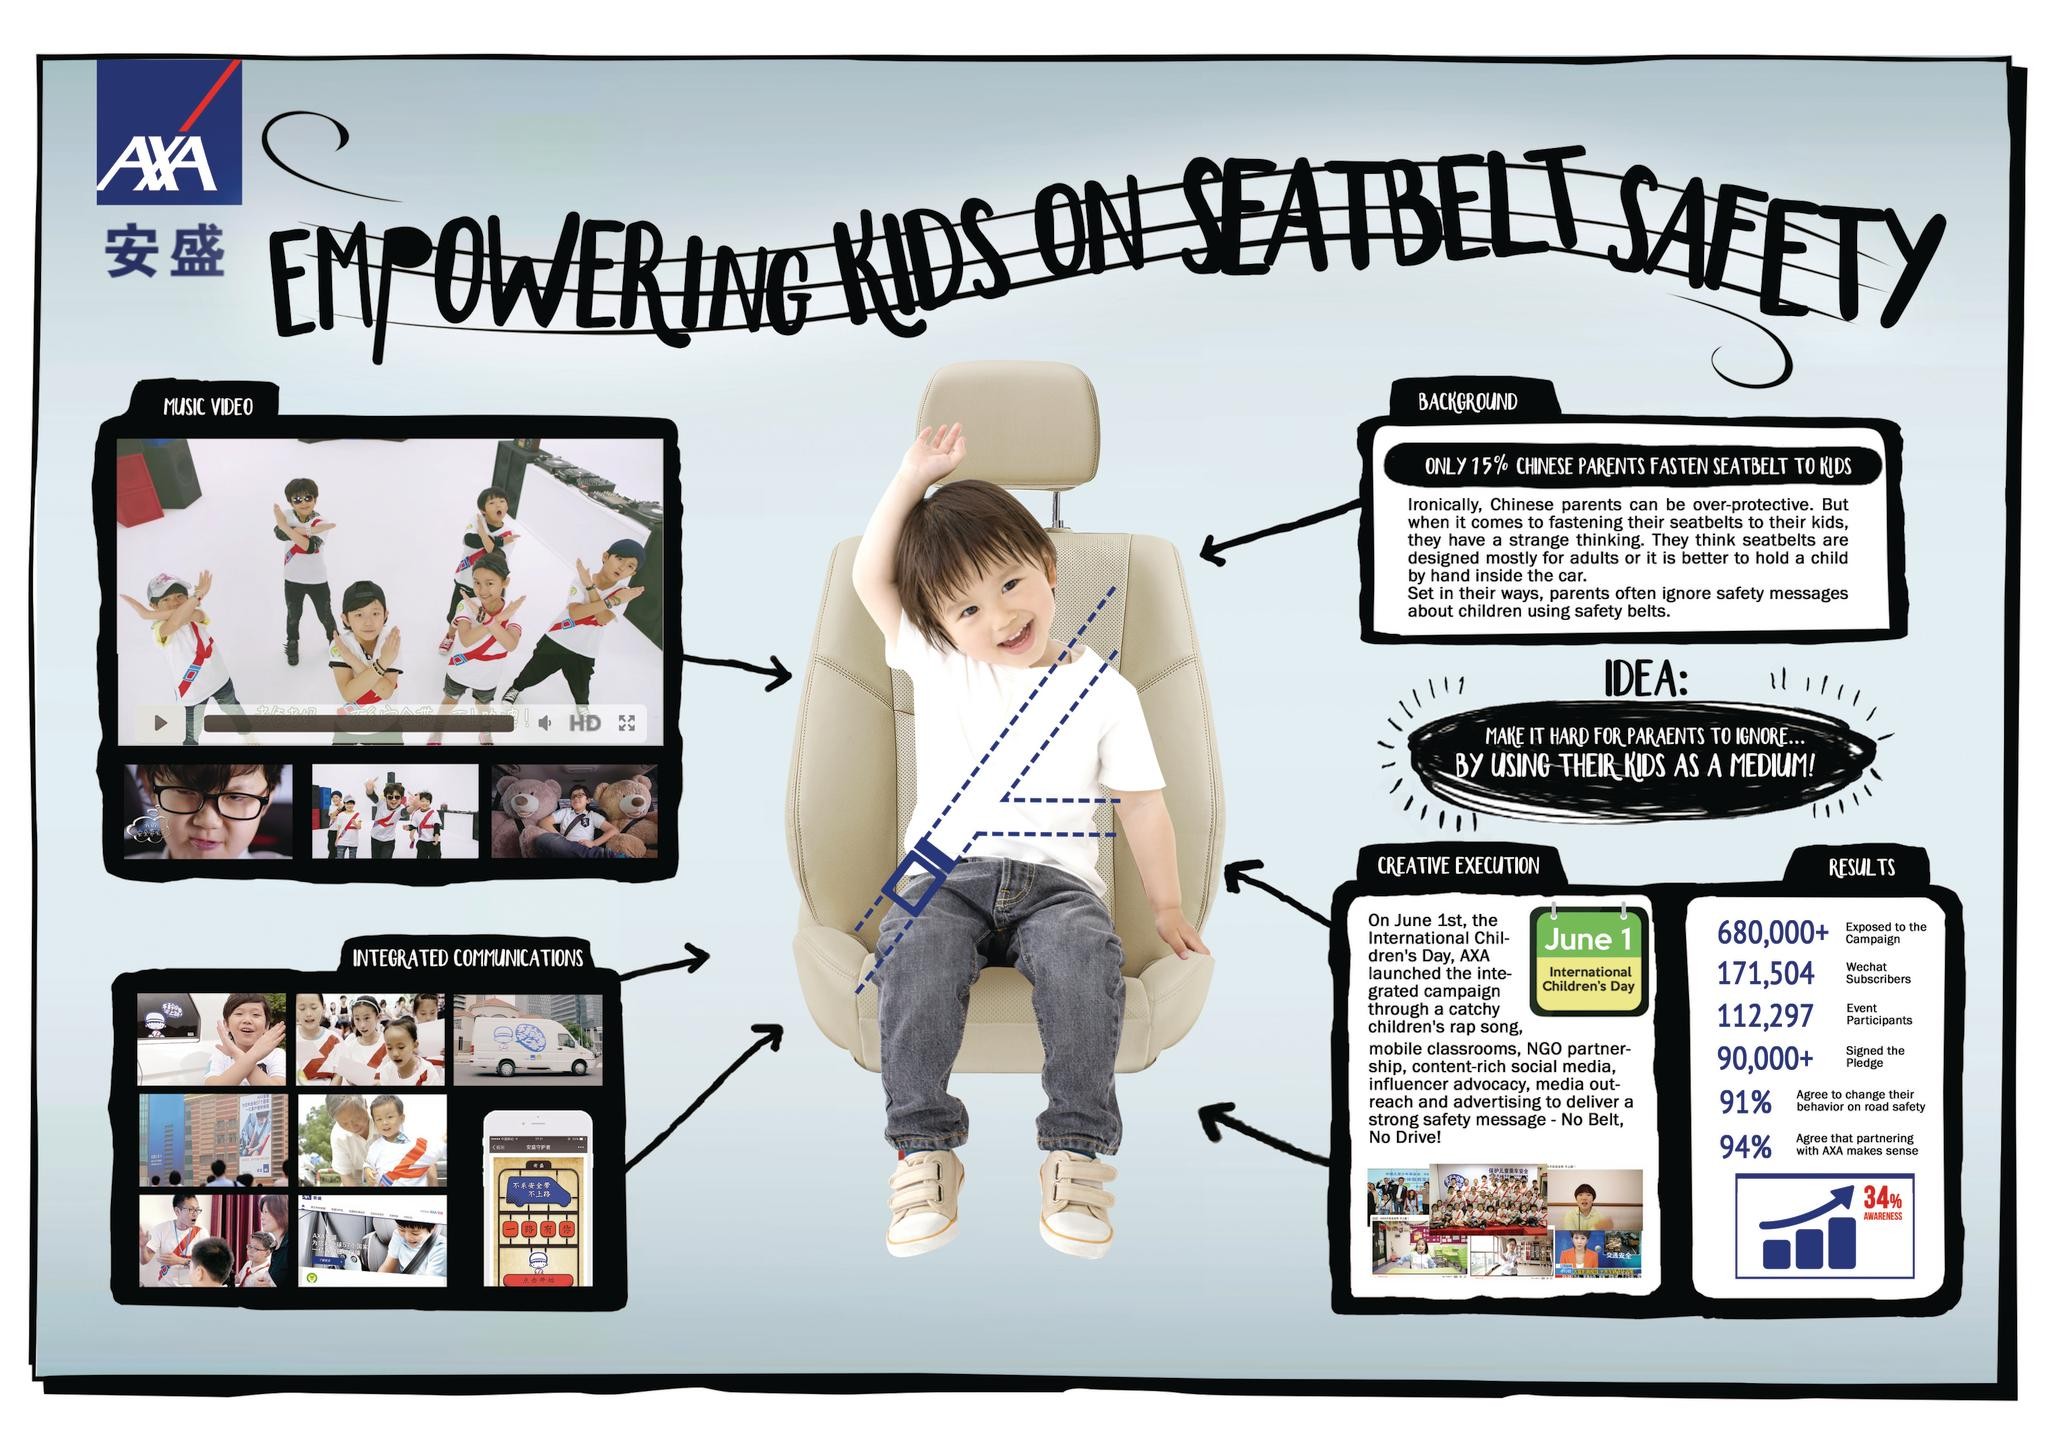 Empowering children on seatbelt safety